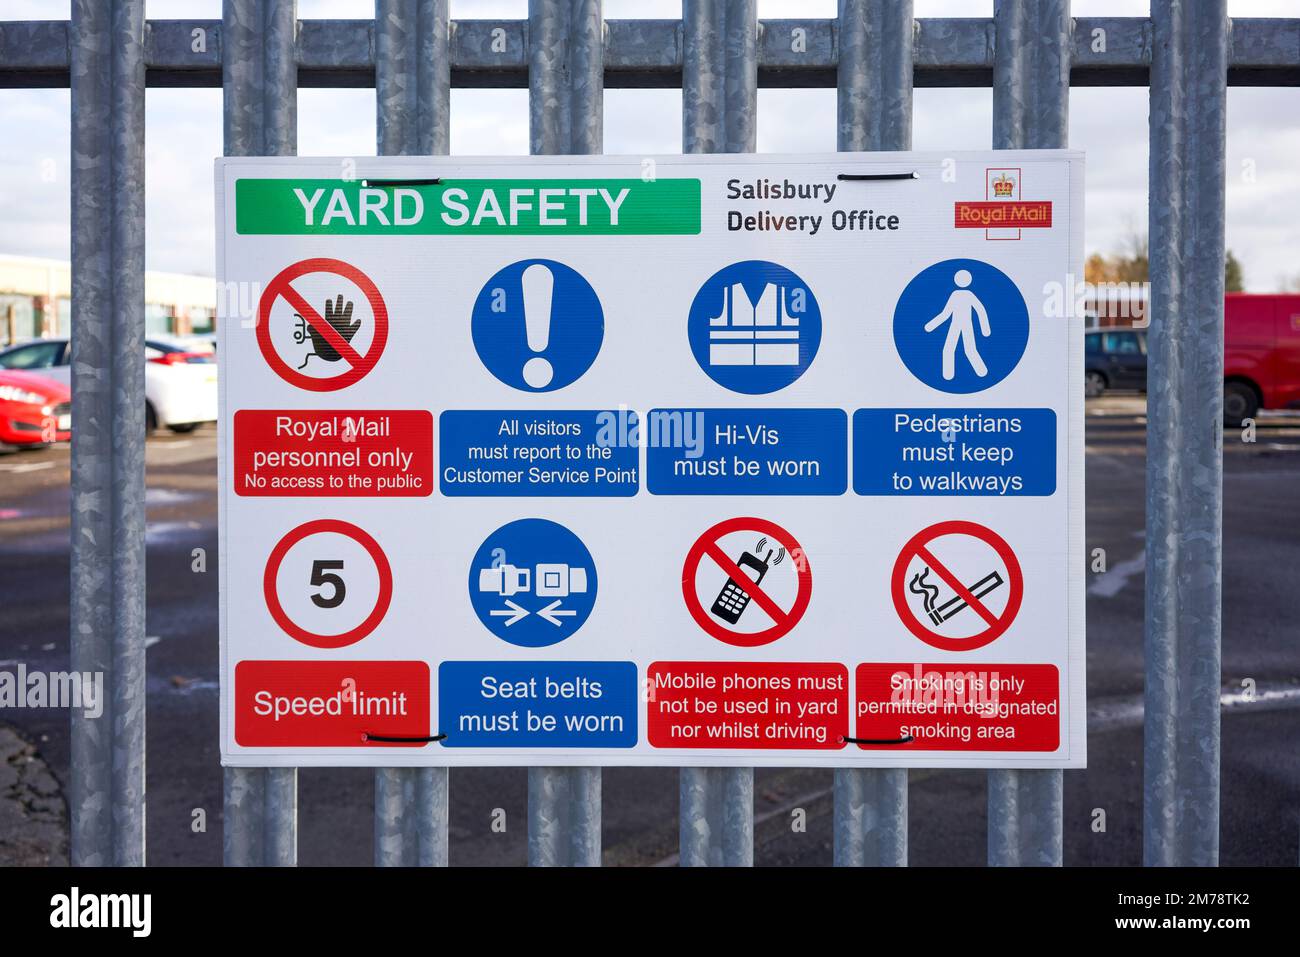 Yard safety instruction notice Stock Photo